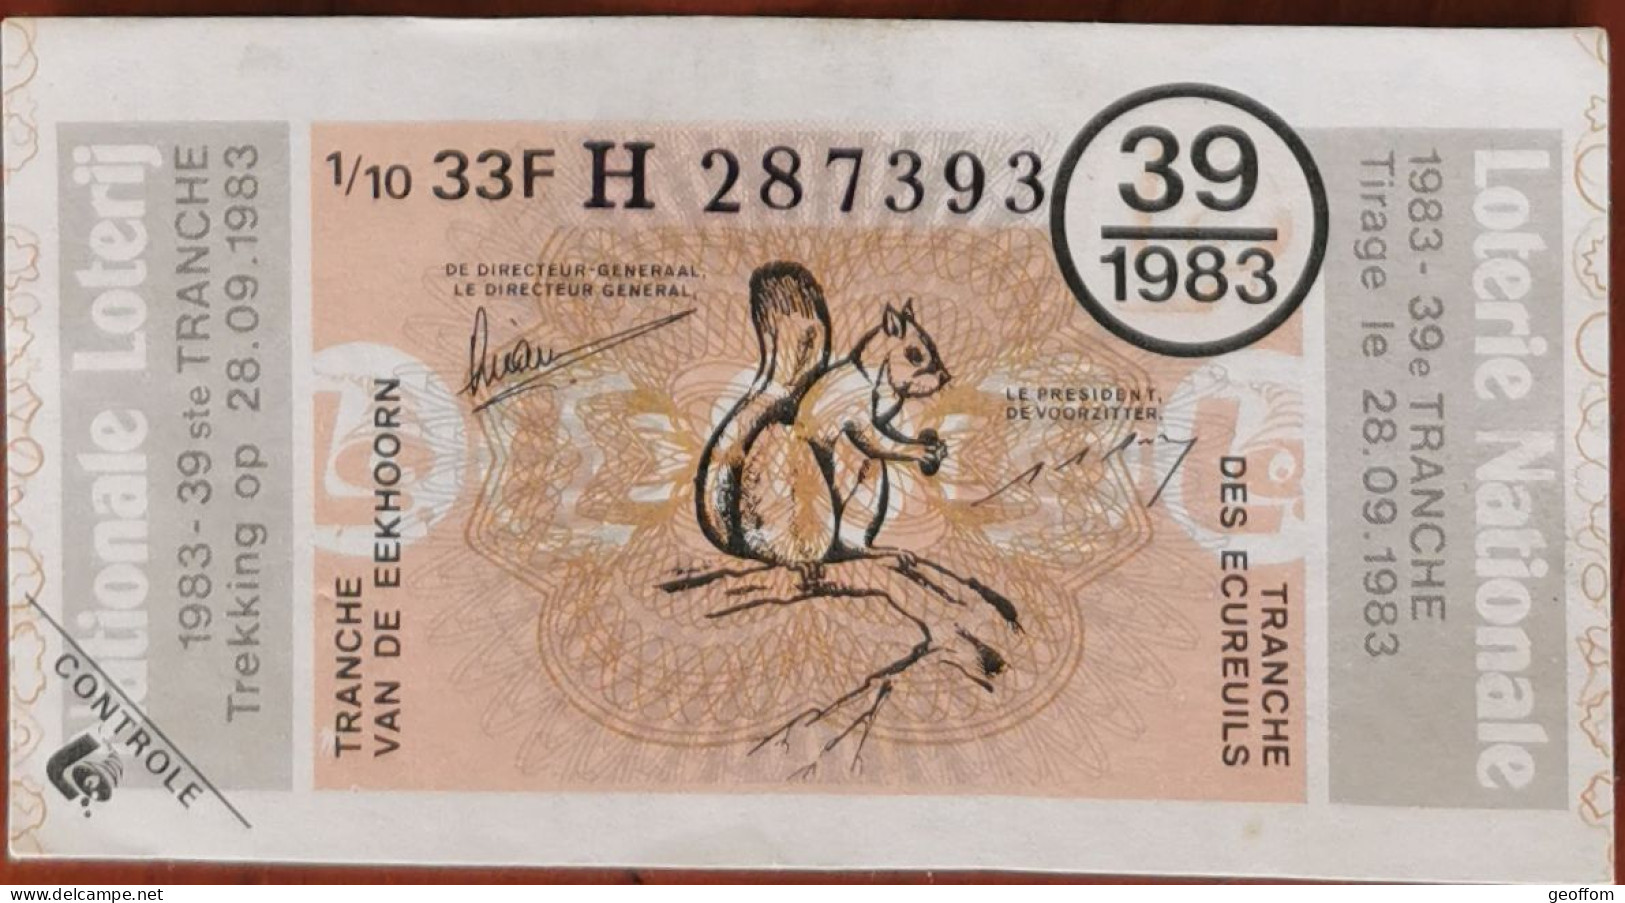 Billet De Loterie Nationale 1983 39e Tranche Des Ecureuils - 28-9-1983 - Billetes De Lotería